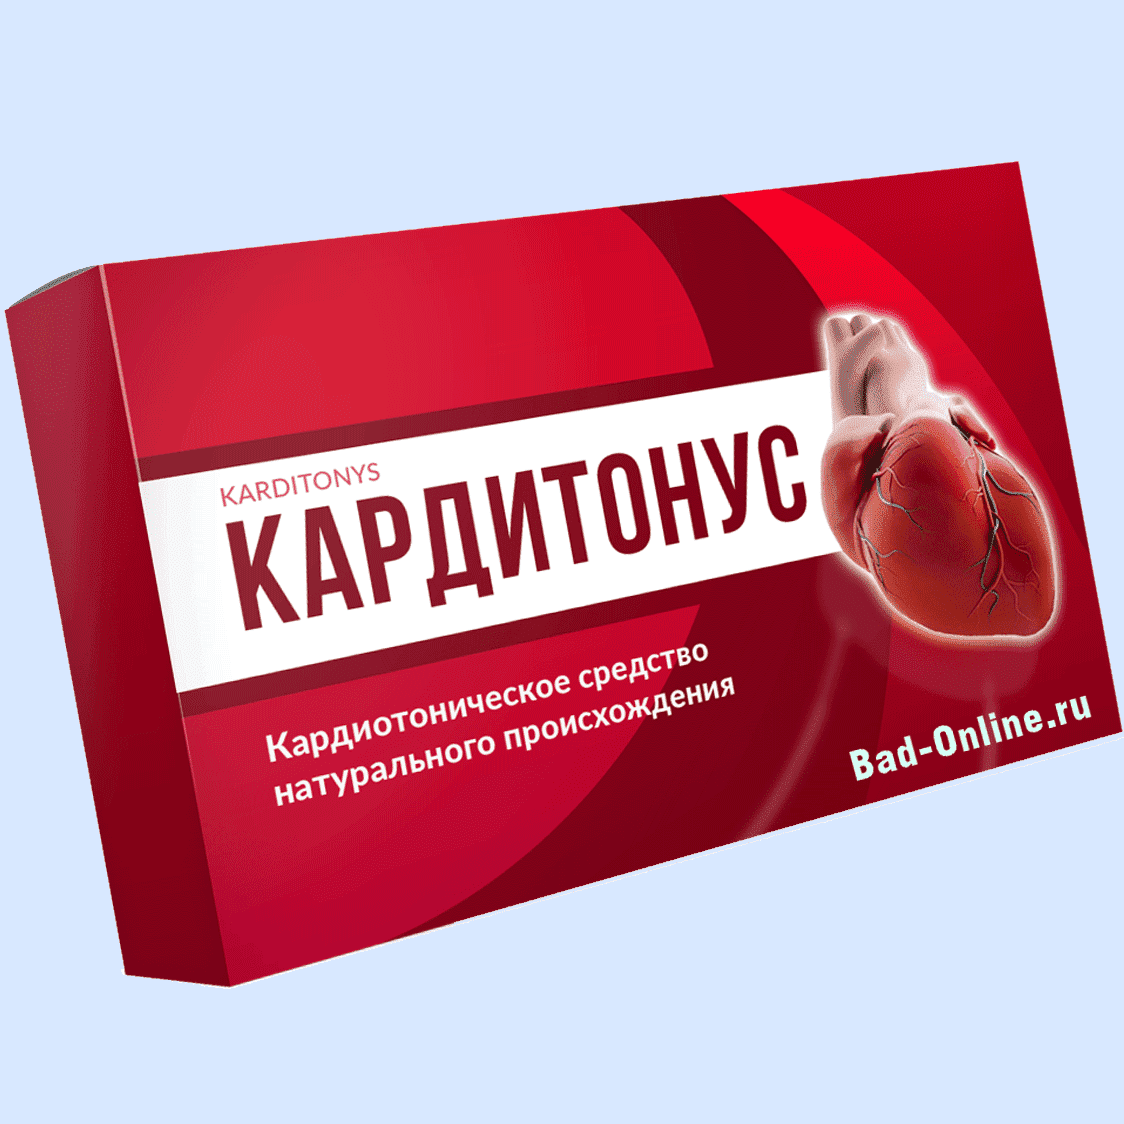 Оригинал препарата Кардитонус, купленный на сайте Bad-Online.ru